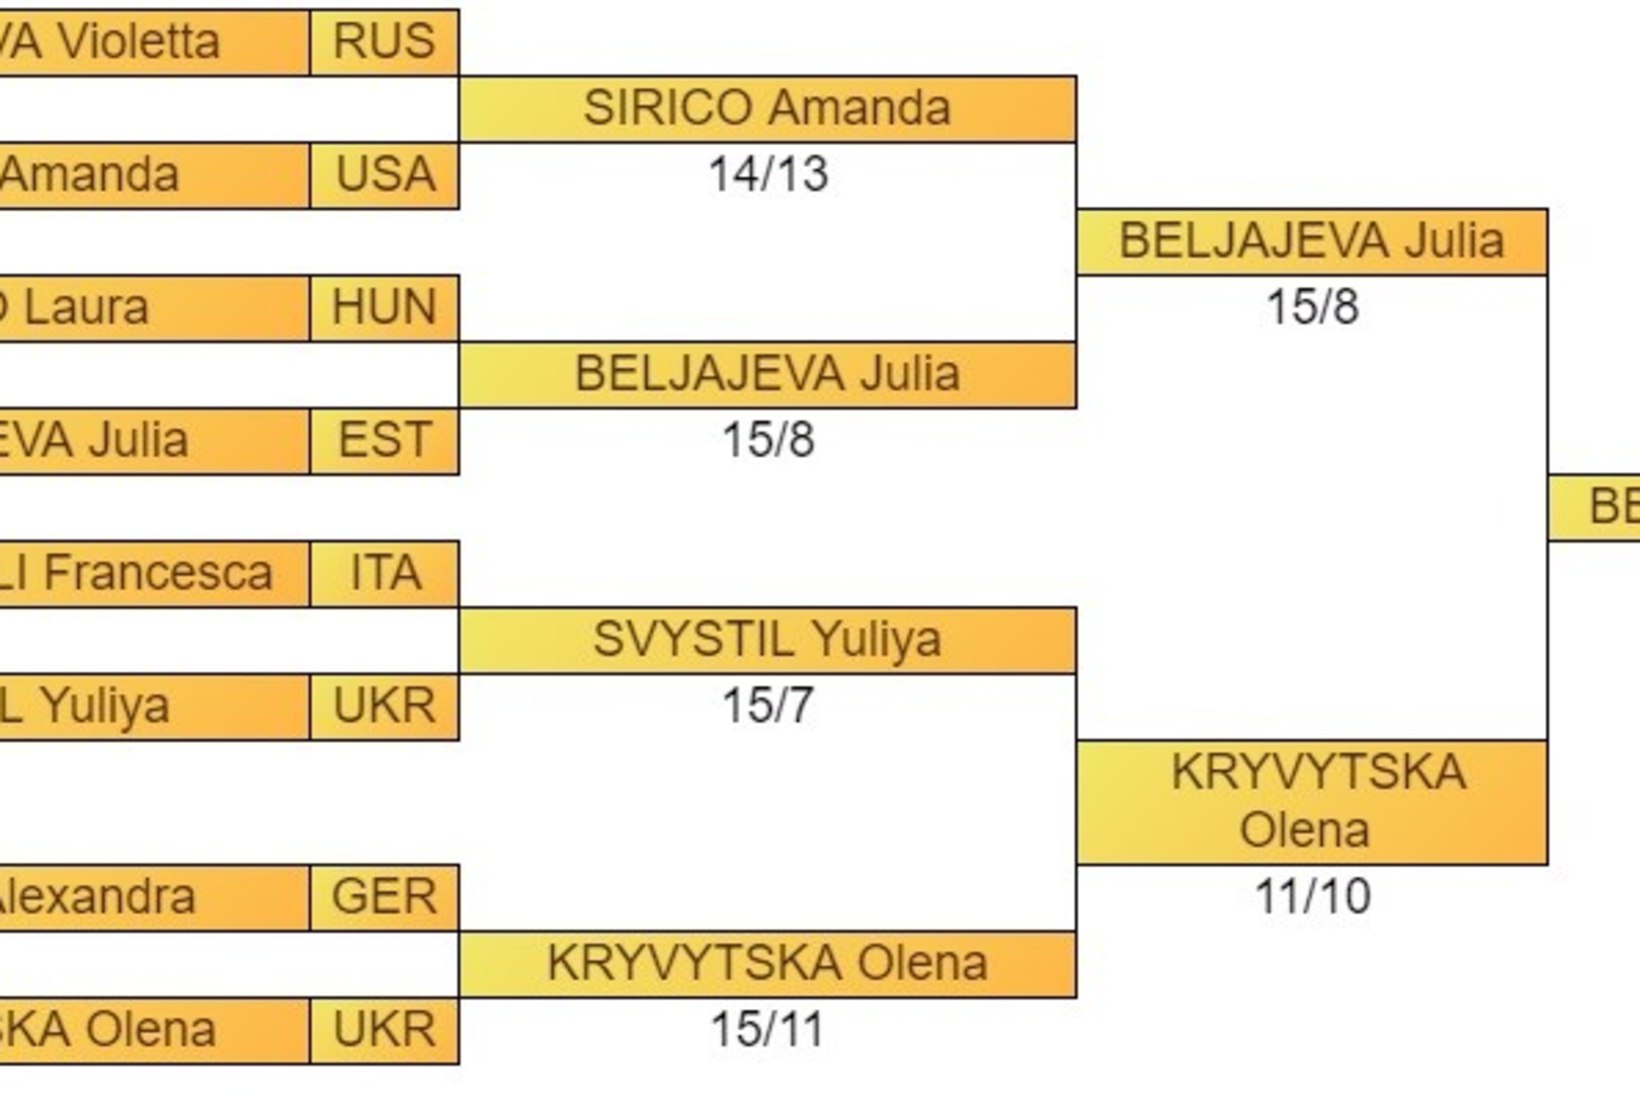 FOTOD | Vägev! Julia Beljajeva teenis elu esimese individuaalse MK-etapivõidu!